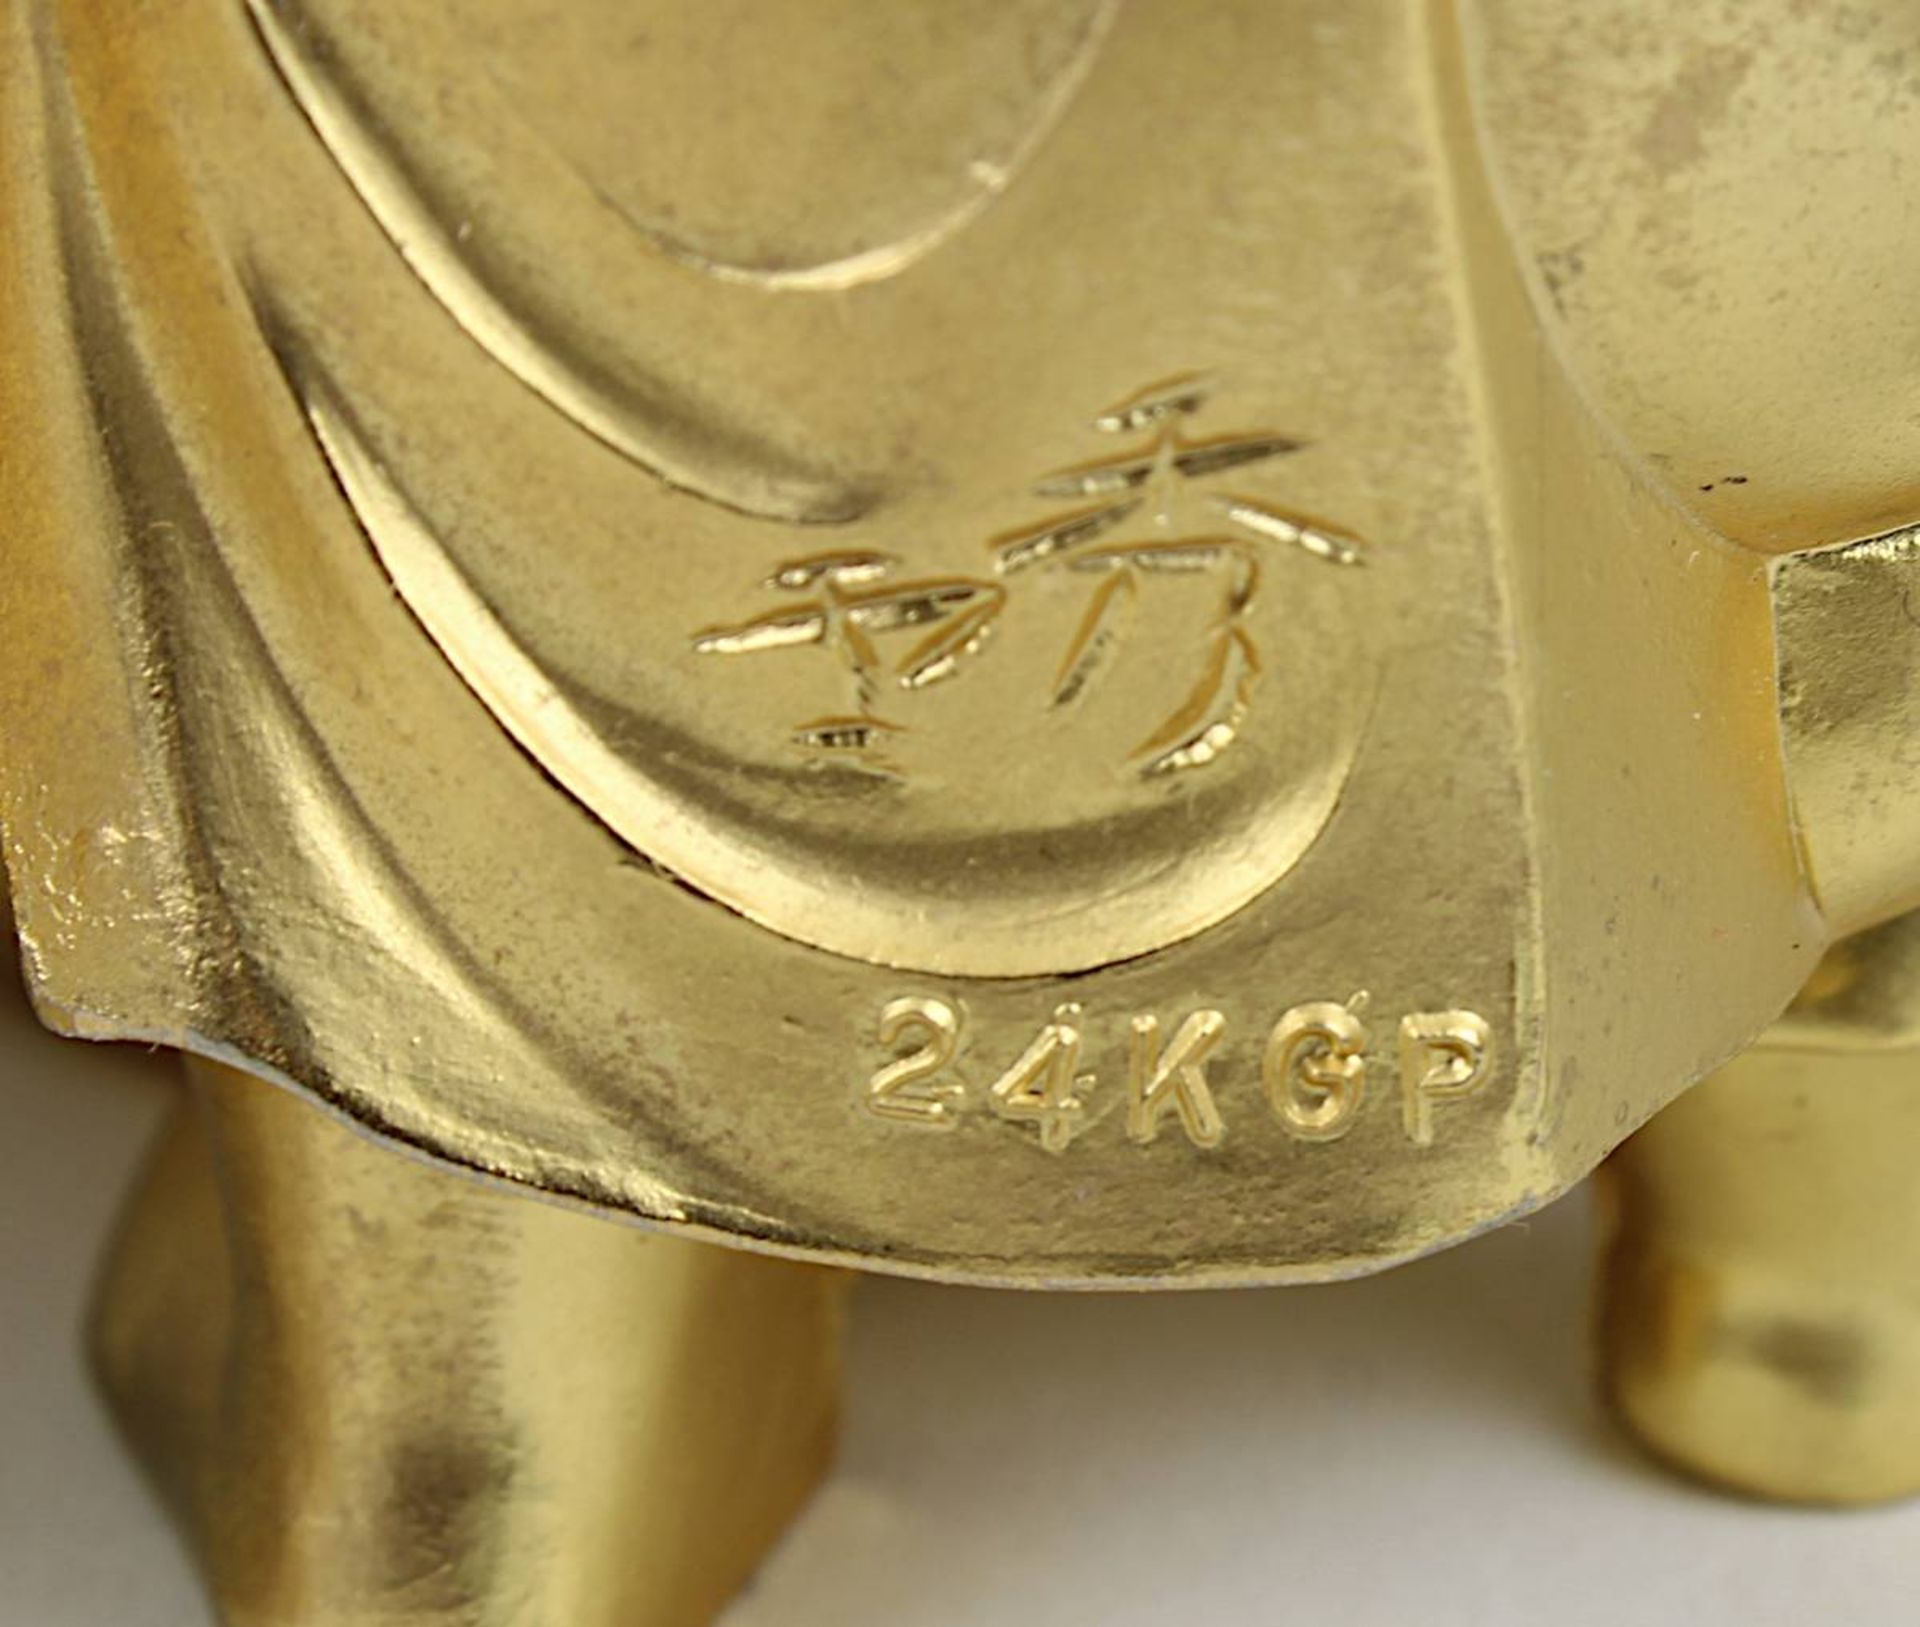 Zwei der sieben Glücksgötter, vergoldete Kupferlegierung, Takaoka, Japan neuzeitlich, H 10 bzw. 8 - Image 4 of 4